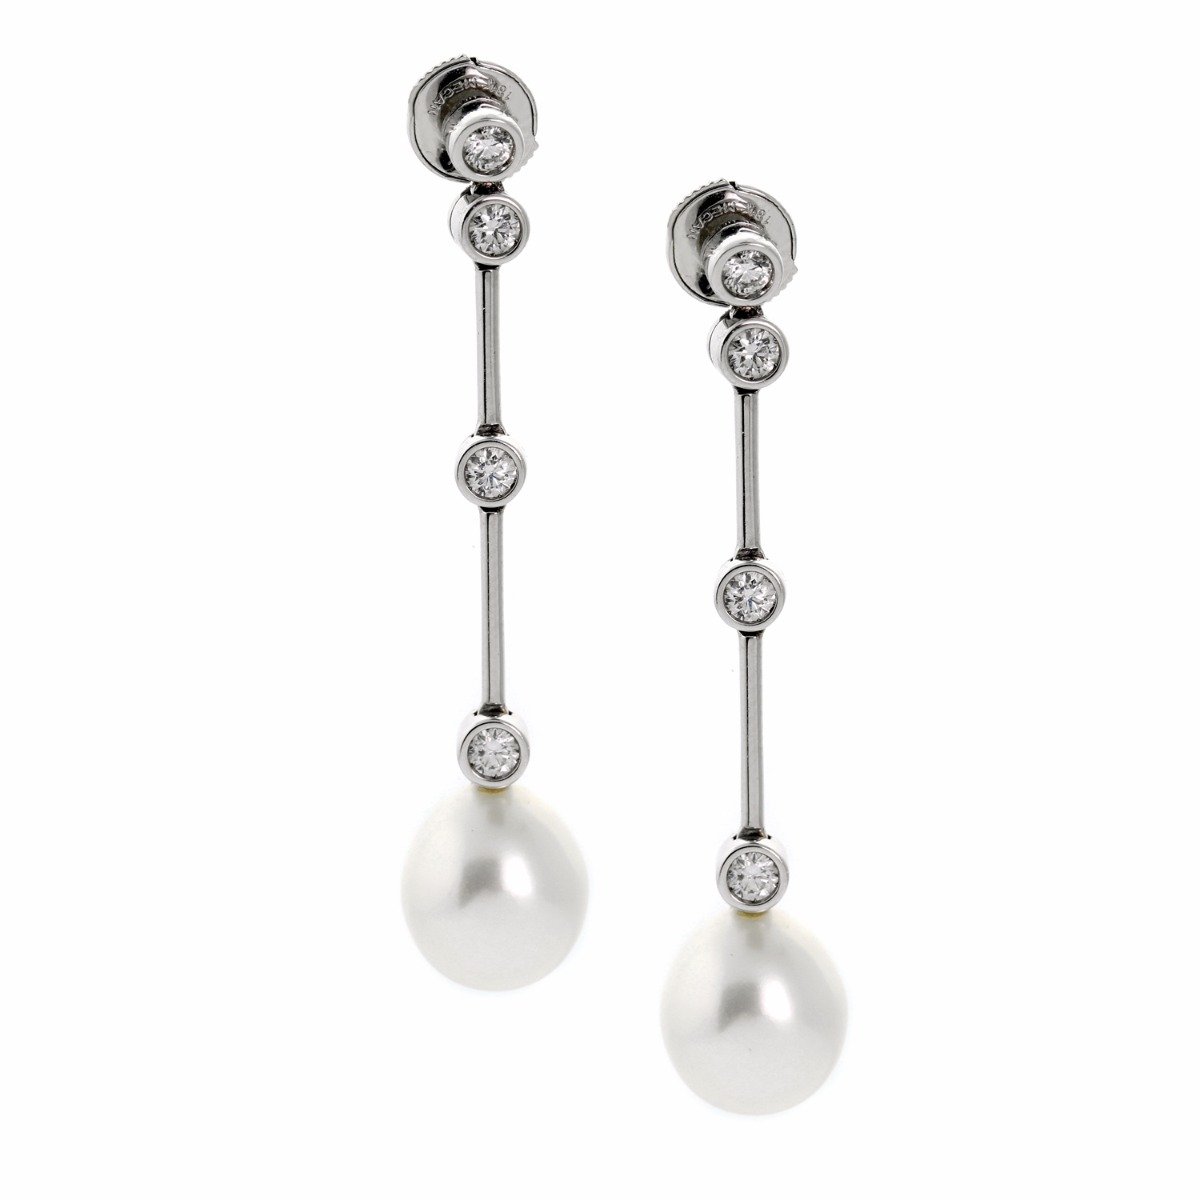 Chanel Plume de Chanel Pearl Diamond White Gold Earrings